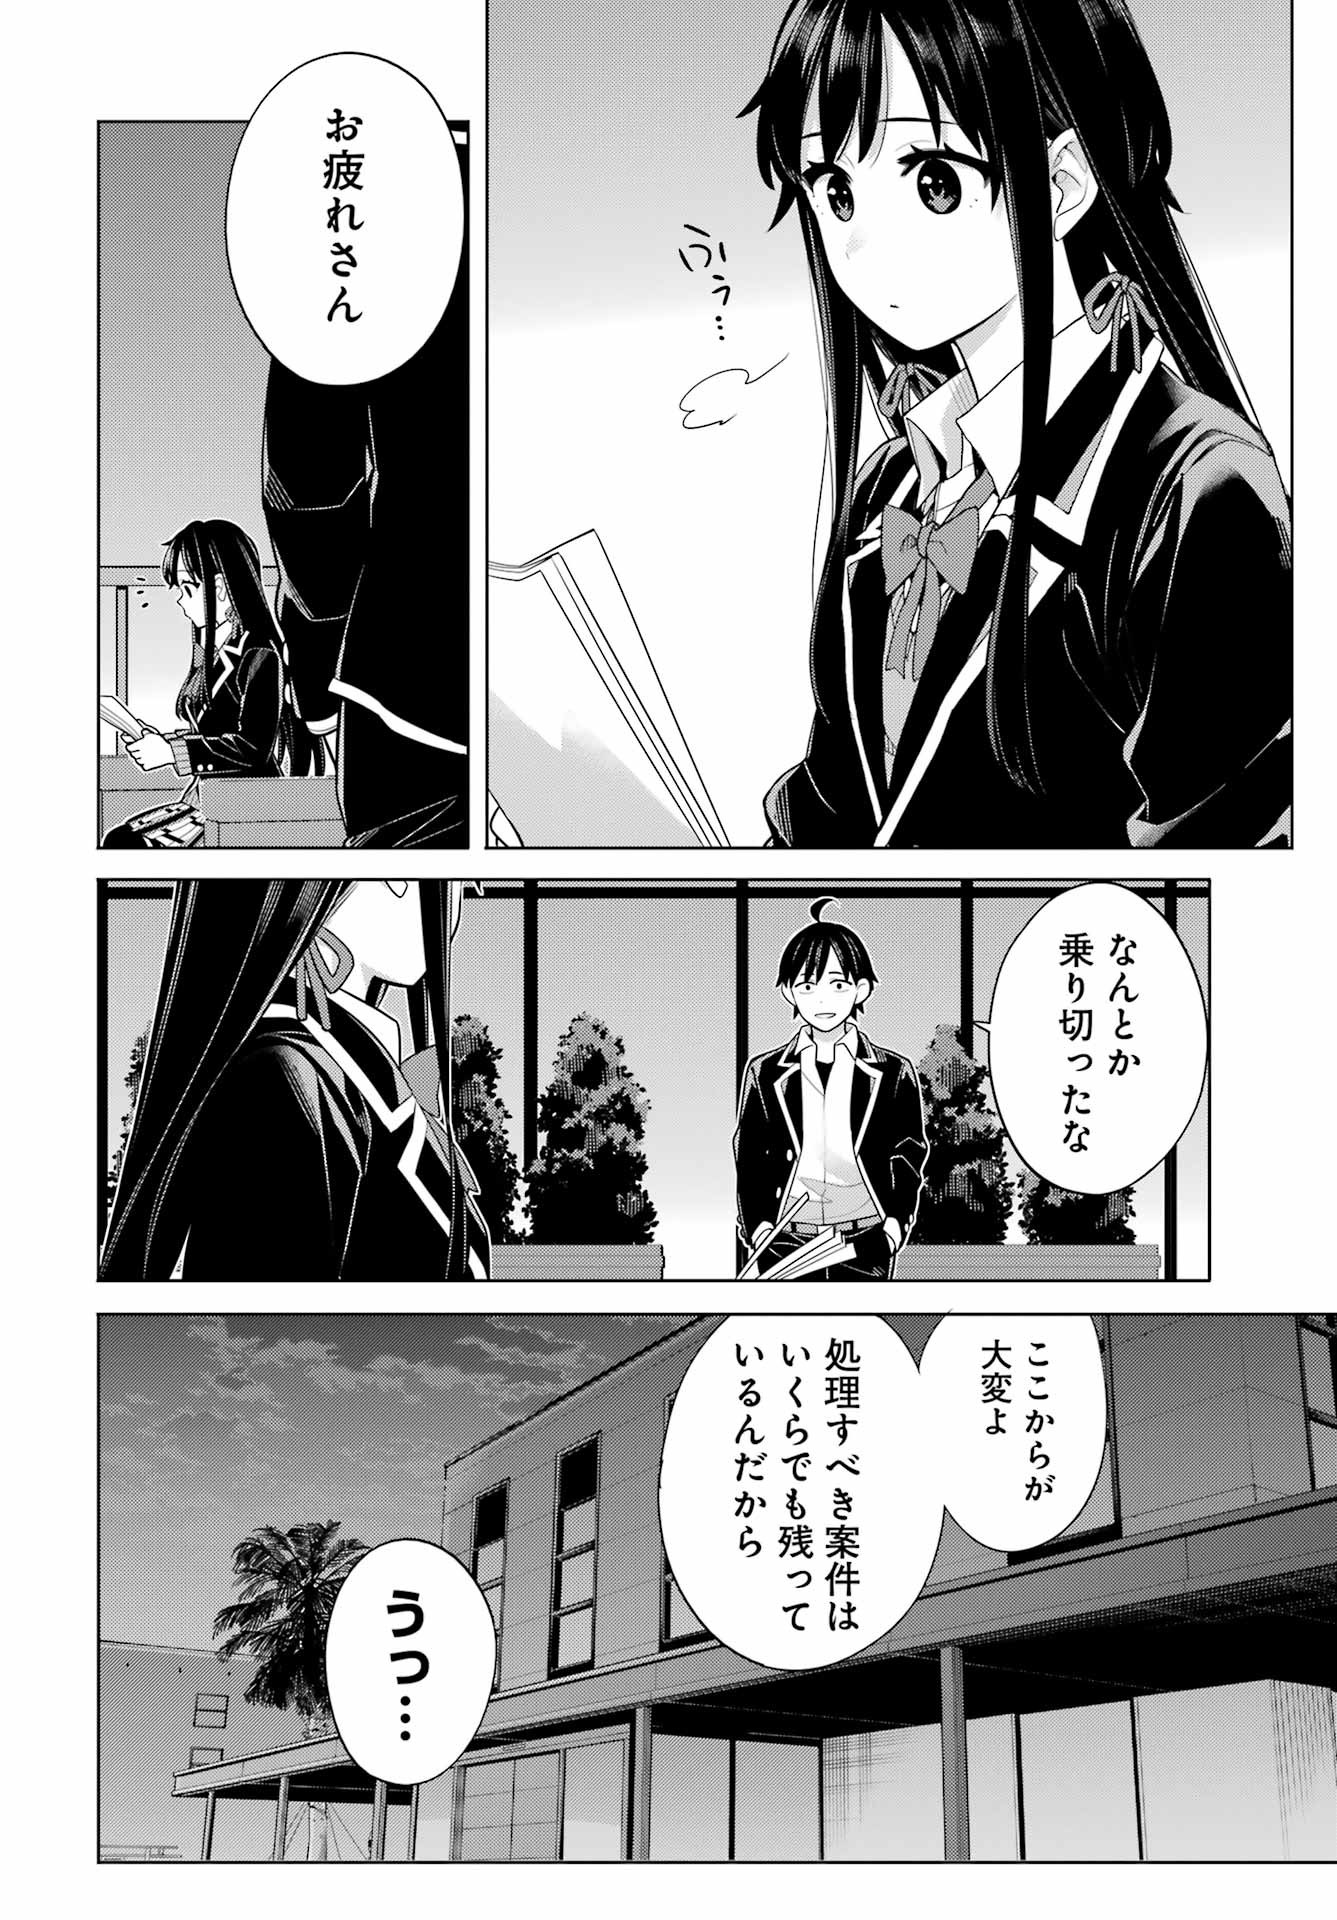 Yahari Ore no Seishun Rabukome wa Machigatte Iru. - Monologue - Chapter FINAL - Page 3